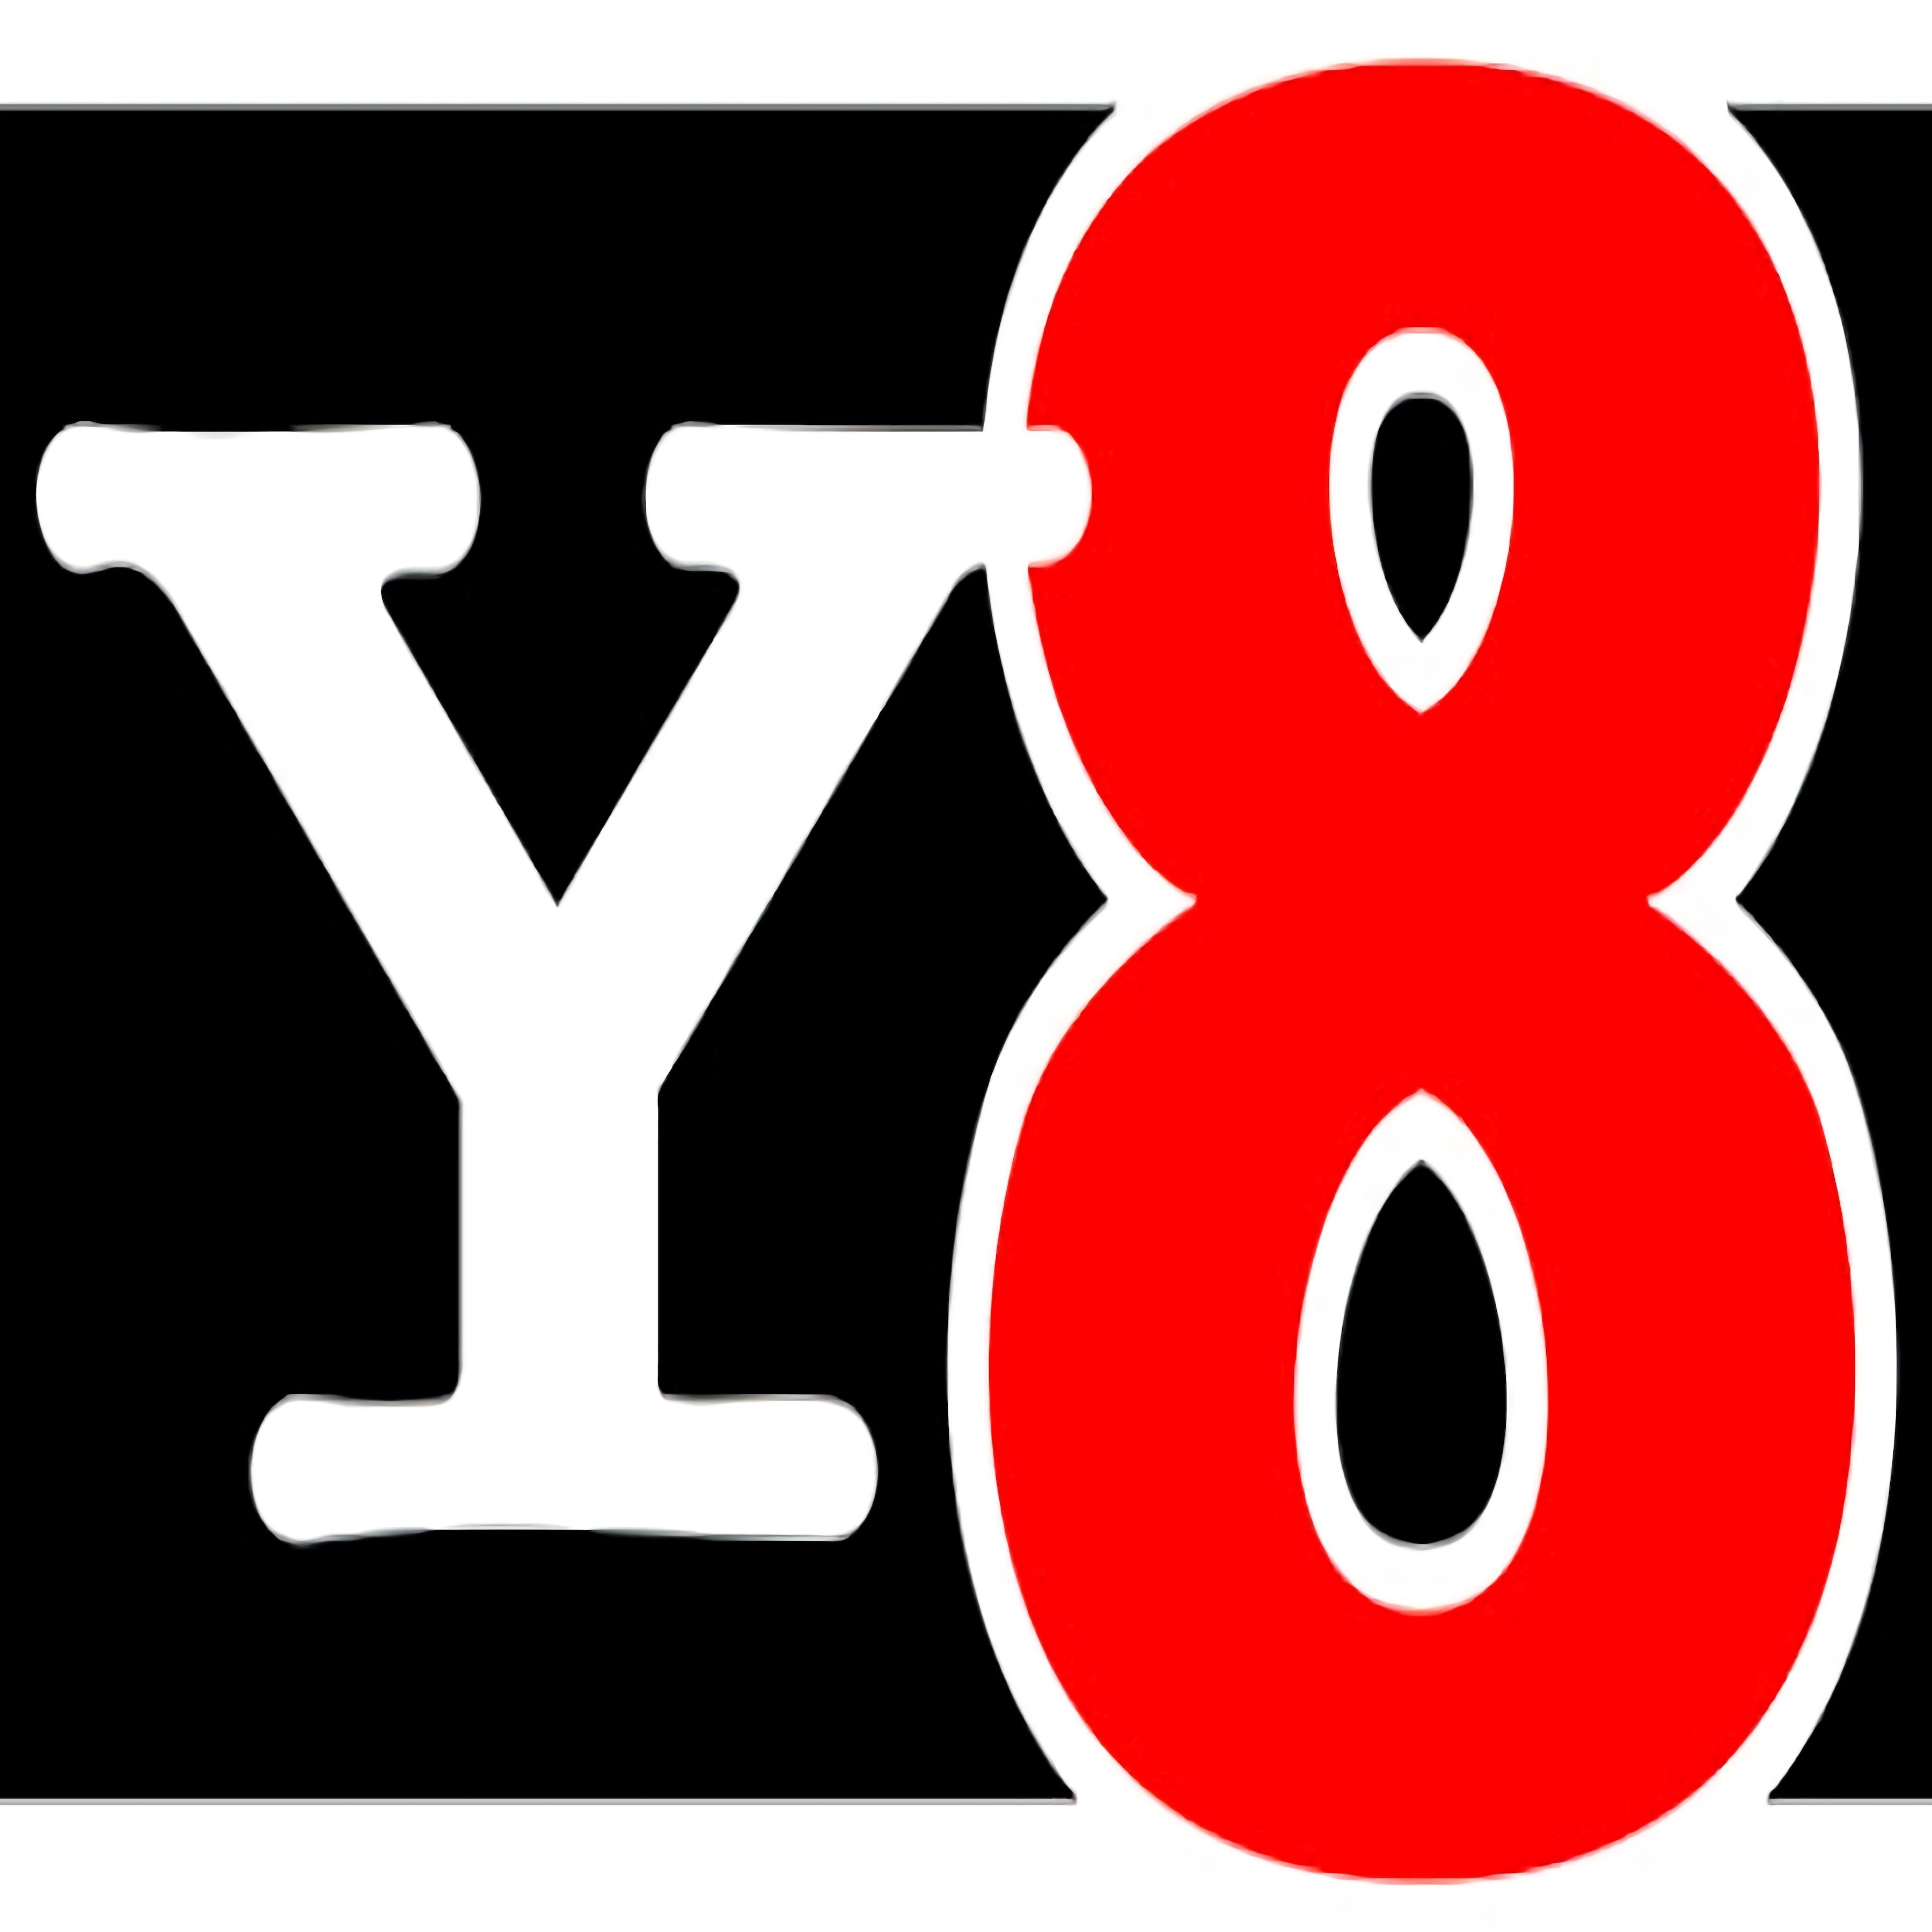 Y8 Spel